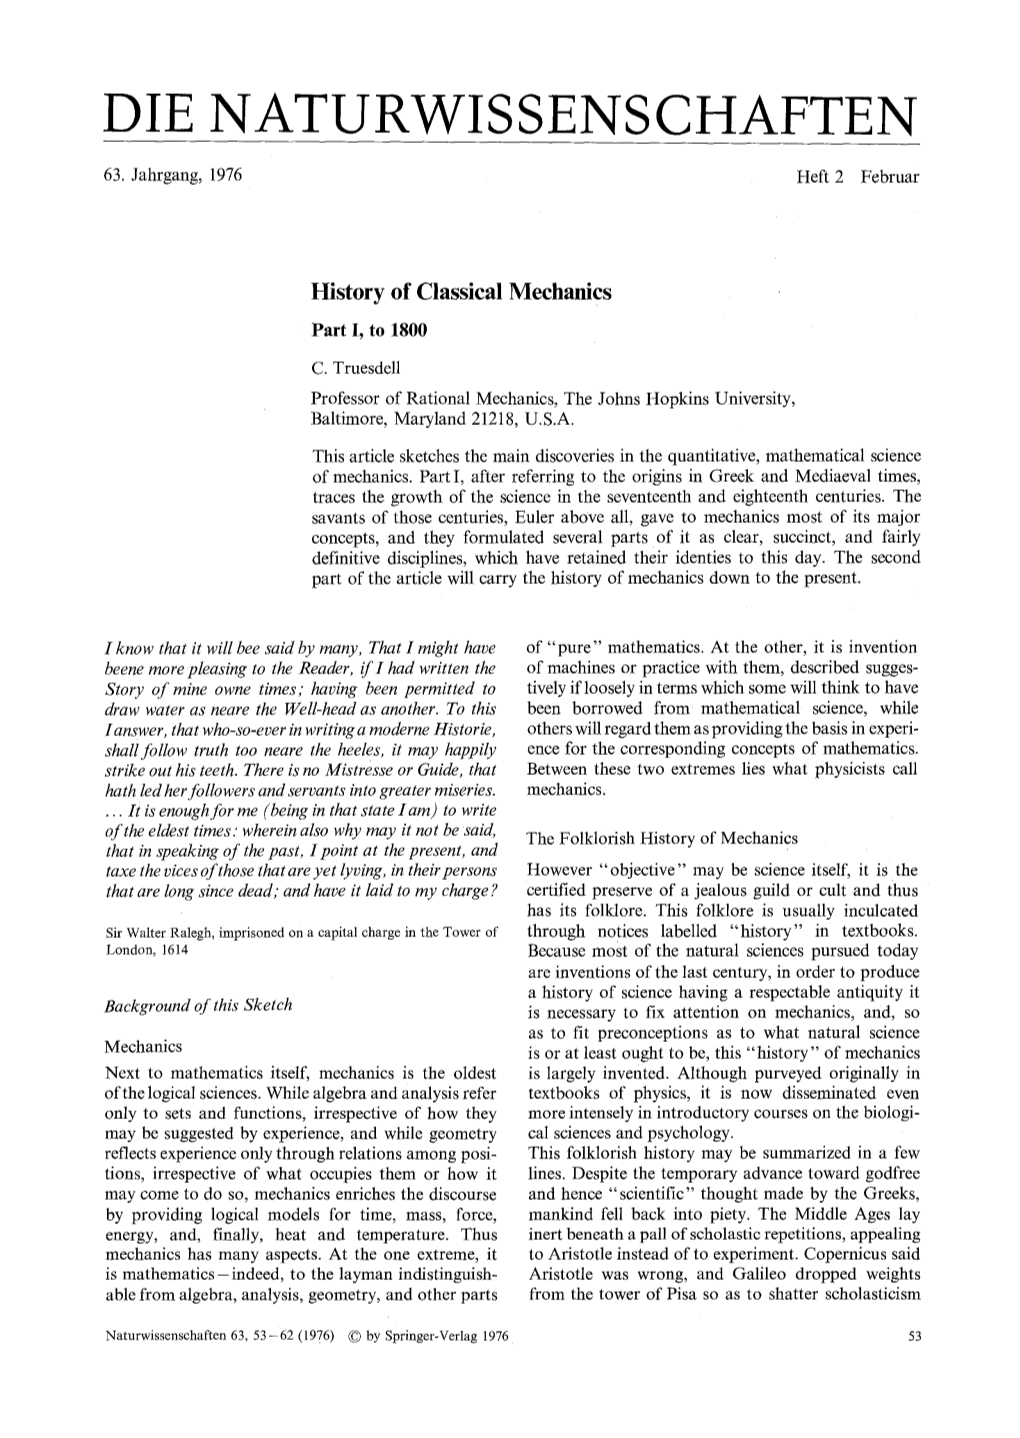 History of Classical Mechanics